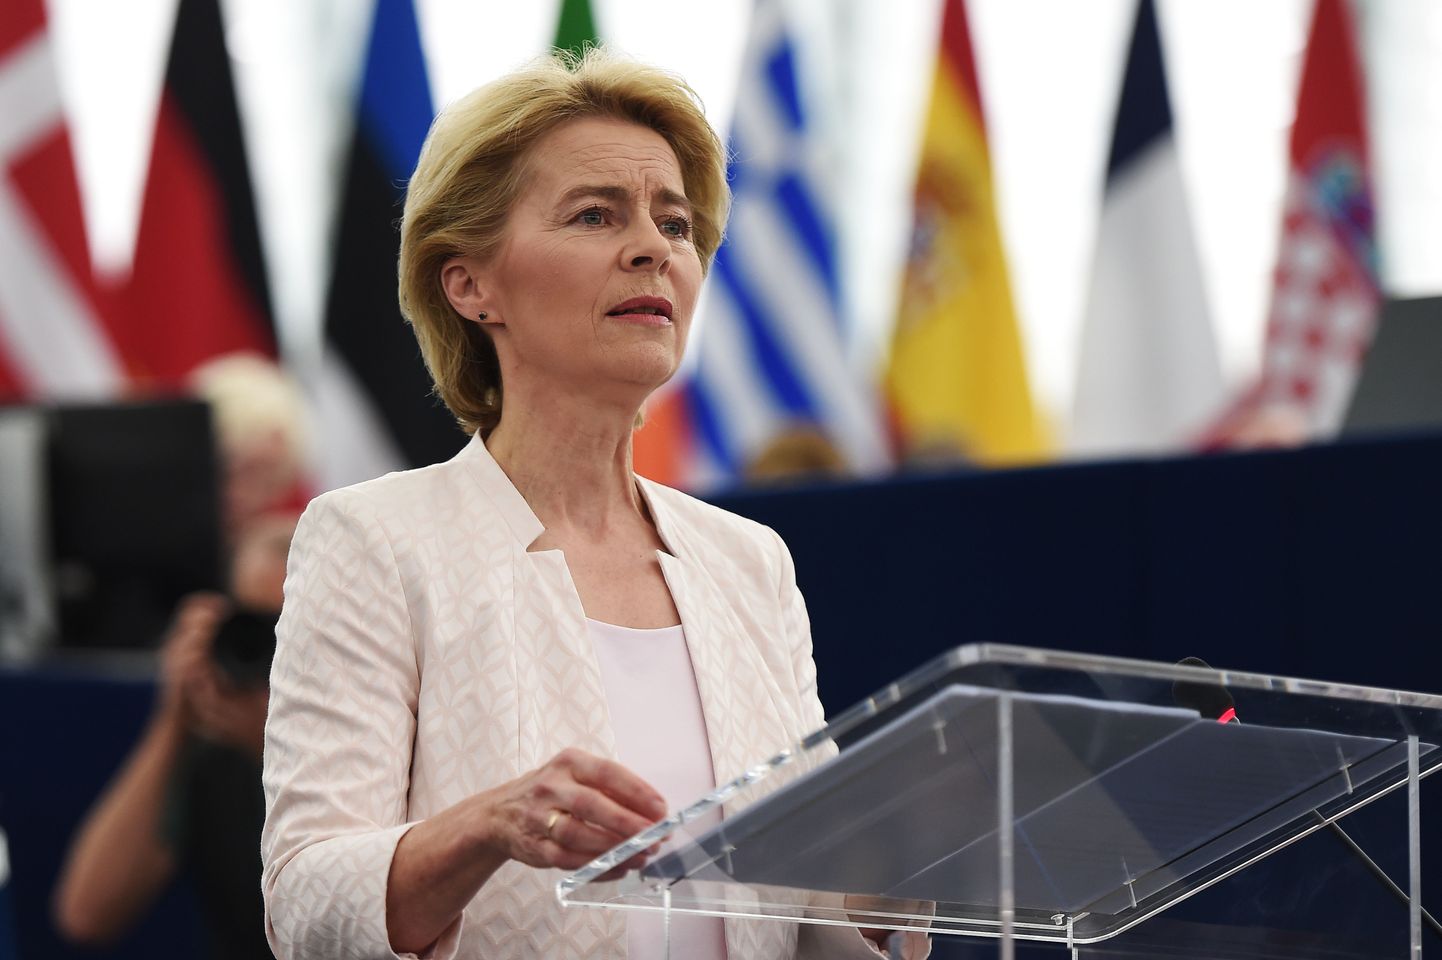 Uue Euroopa Komisjoni presidendiks valituks Ursula von der Leyen pidamas kõnet Euroopa Parlamendile 16. juulil 2019 Strasbourgis Prantsusmaal.